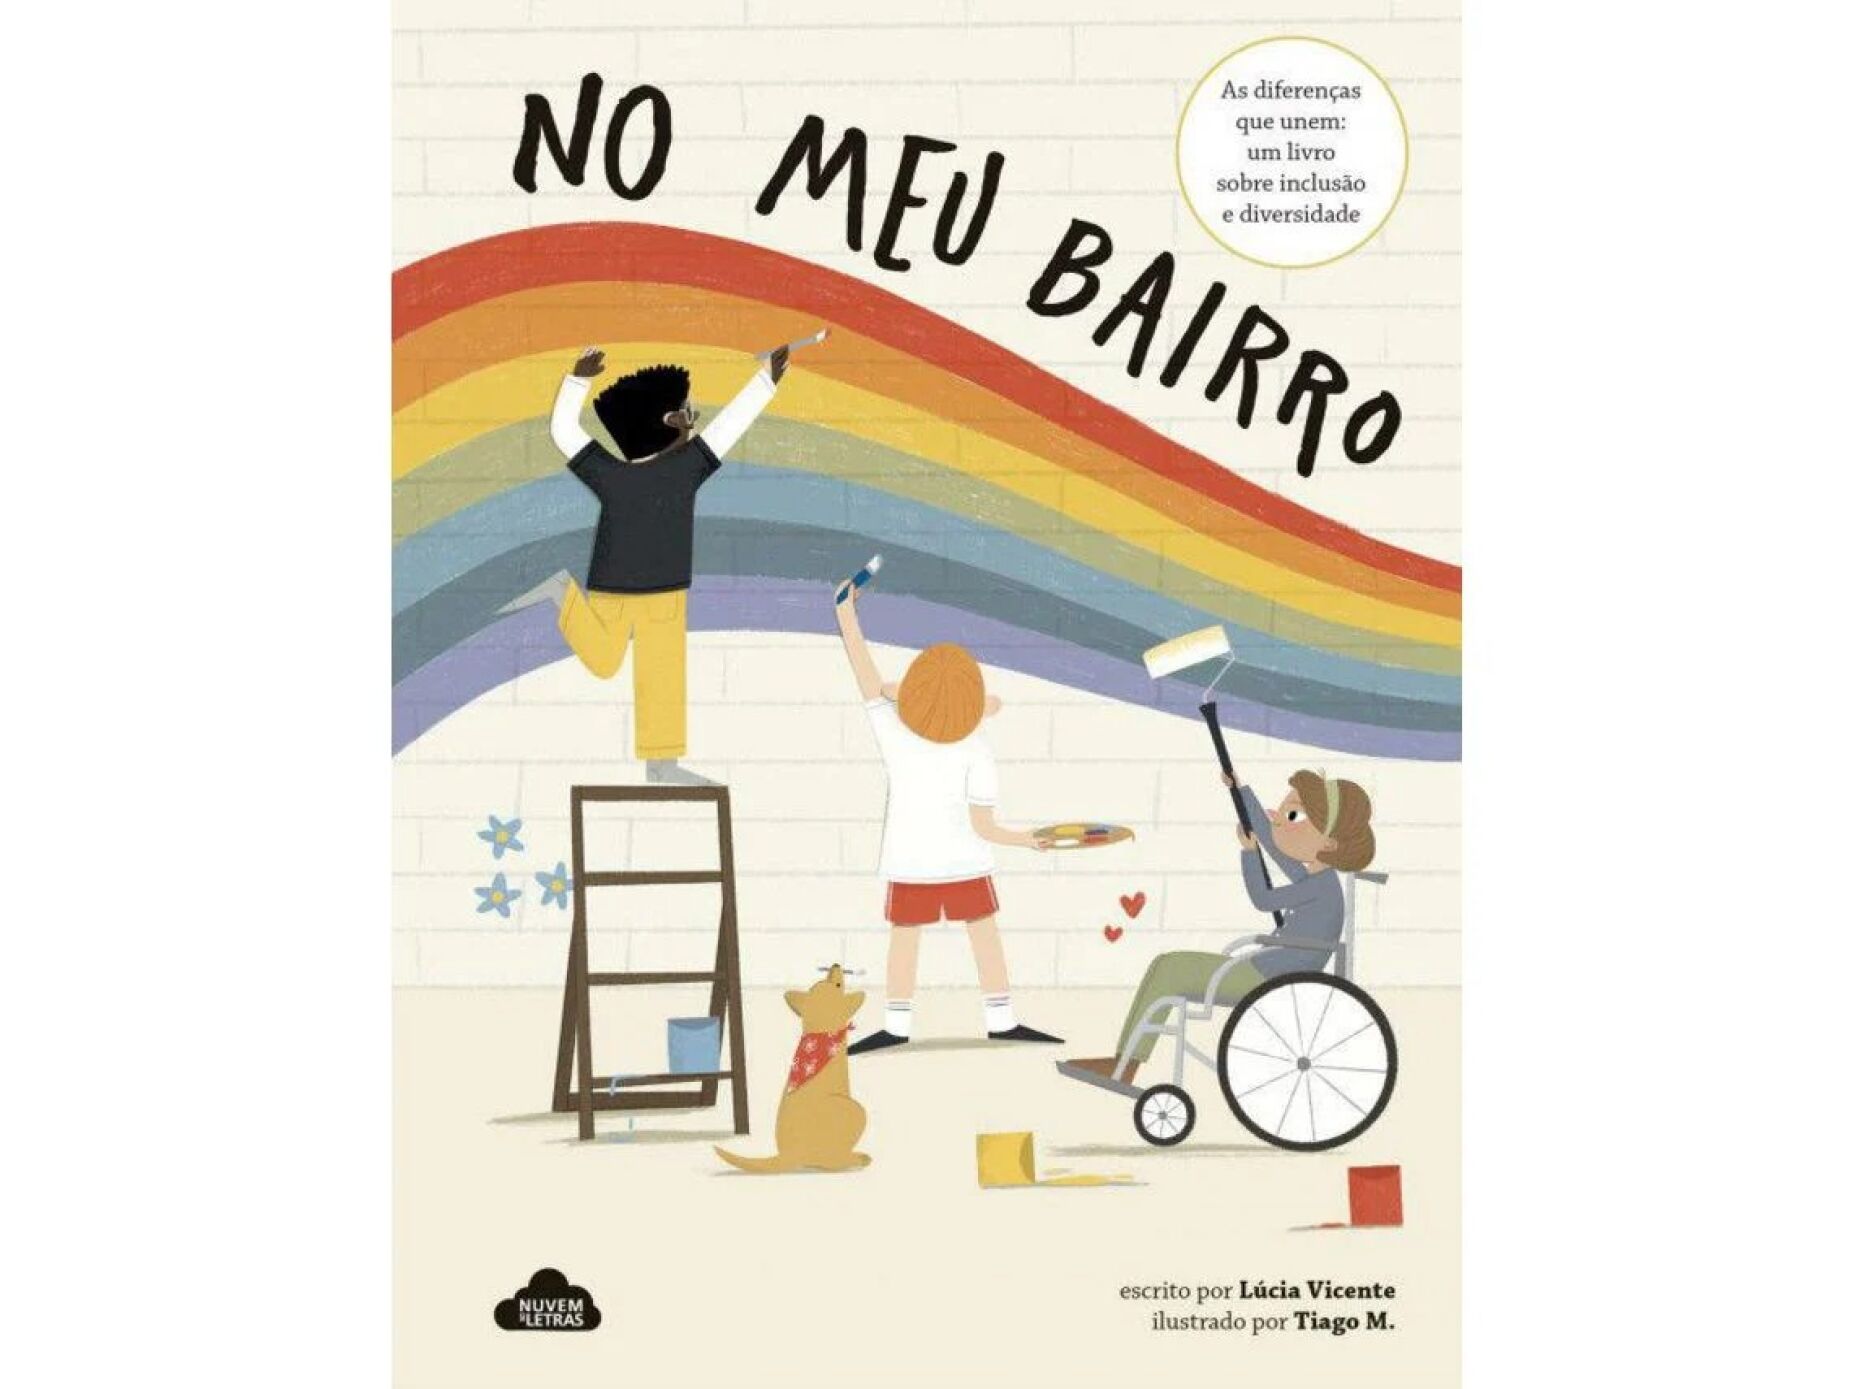 Livro infantil "No meu bairro" dá origem a peça de teatro sobre inclusão e diversidade (C/ÁUDIO)